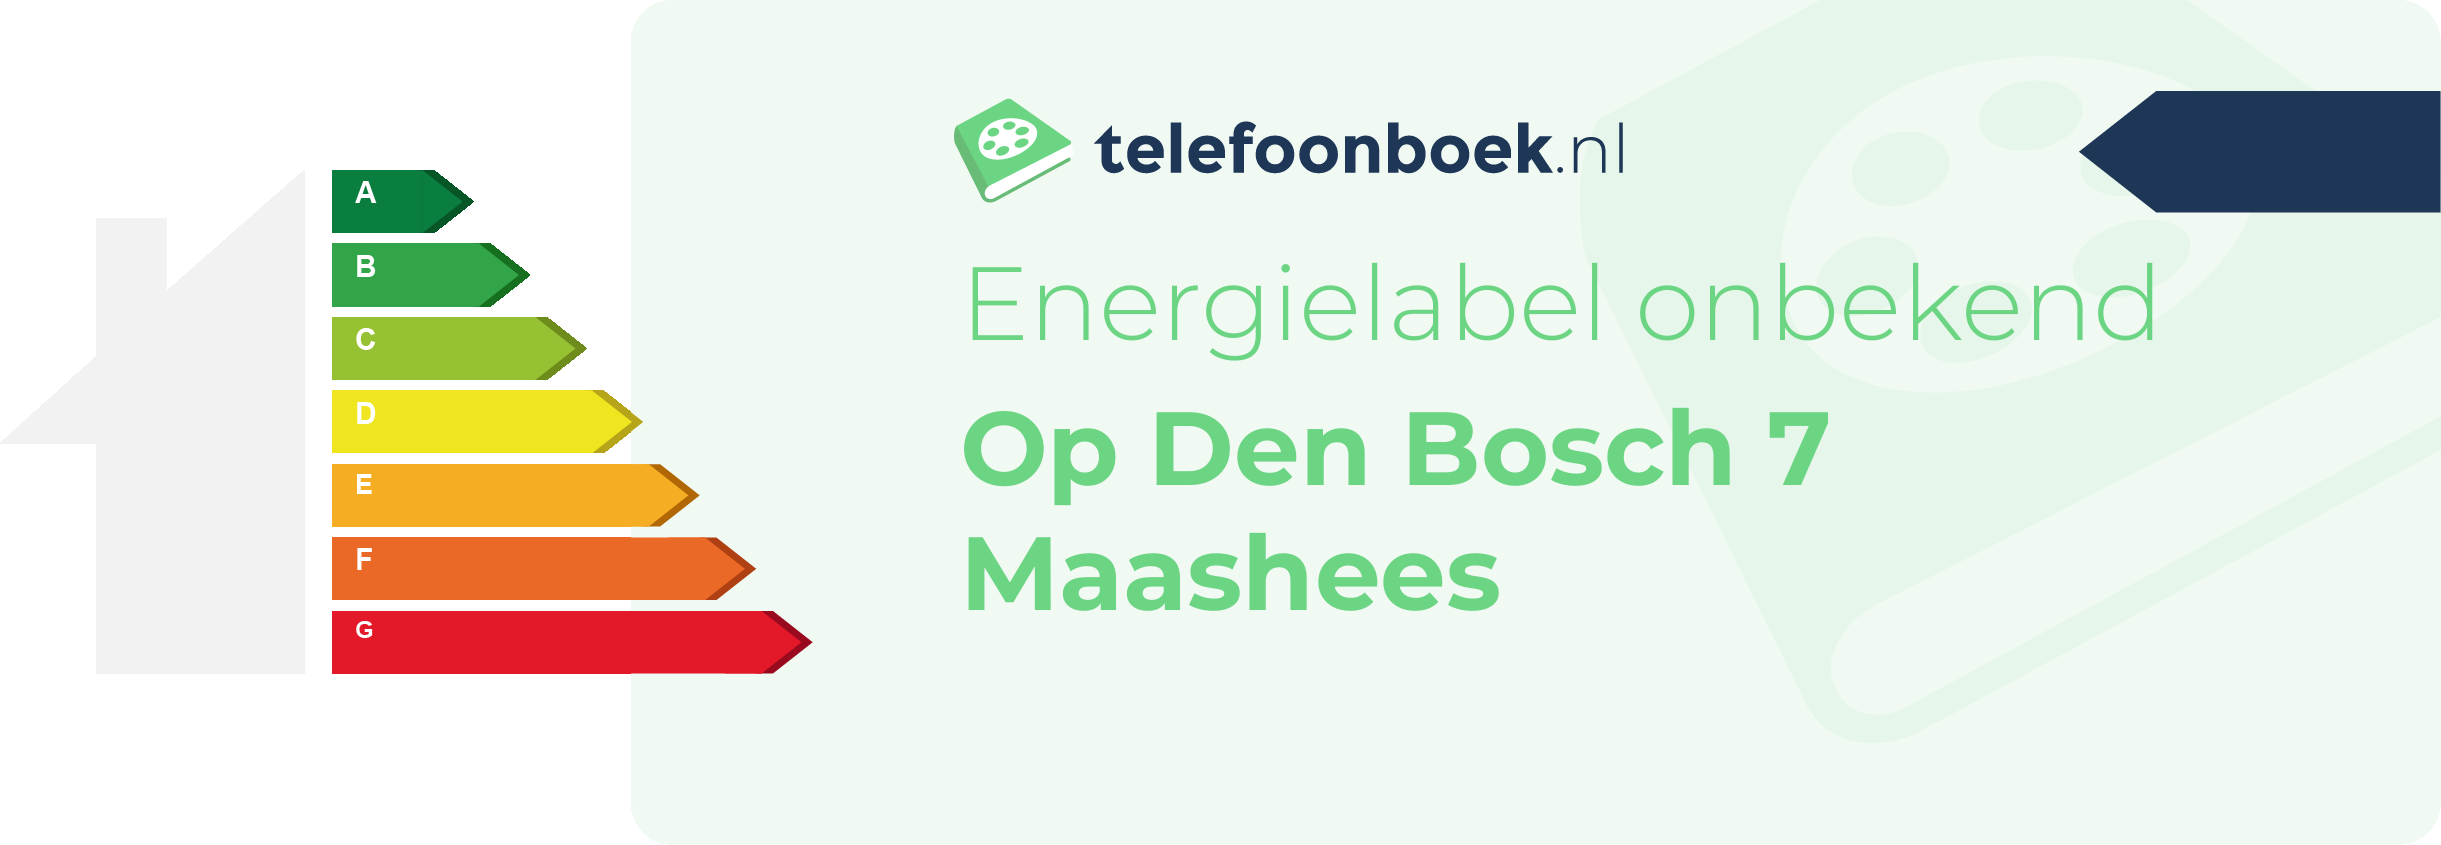 Energielabel Op Den Bosch 7 Maashees